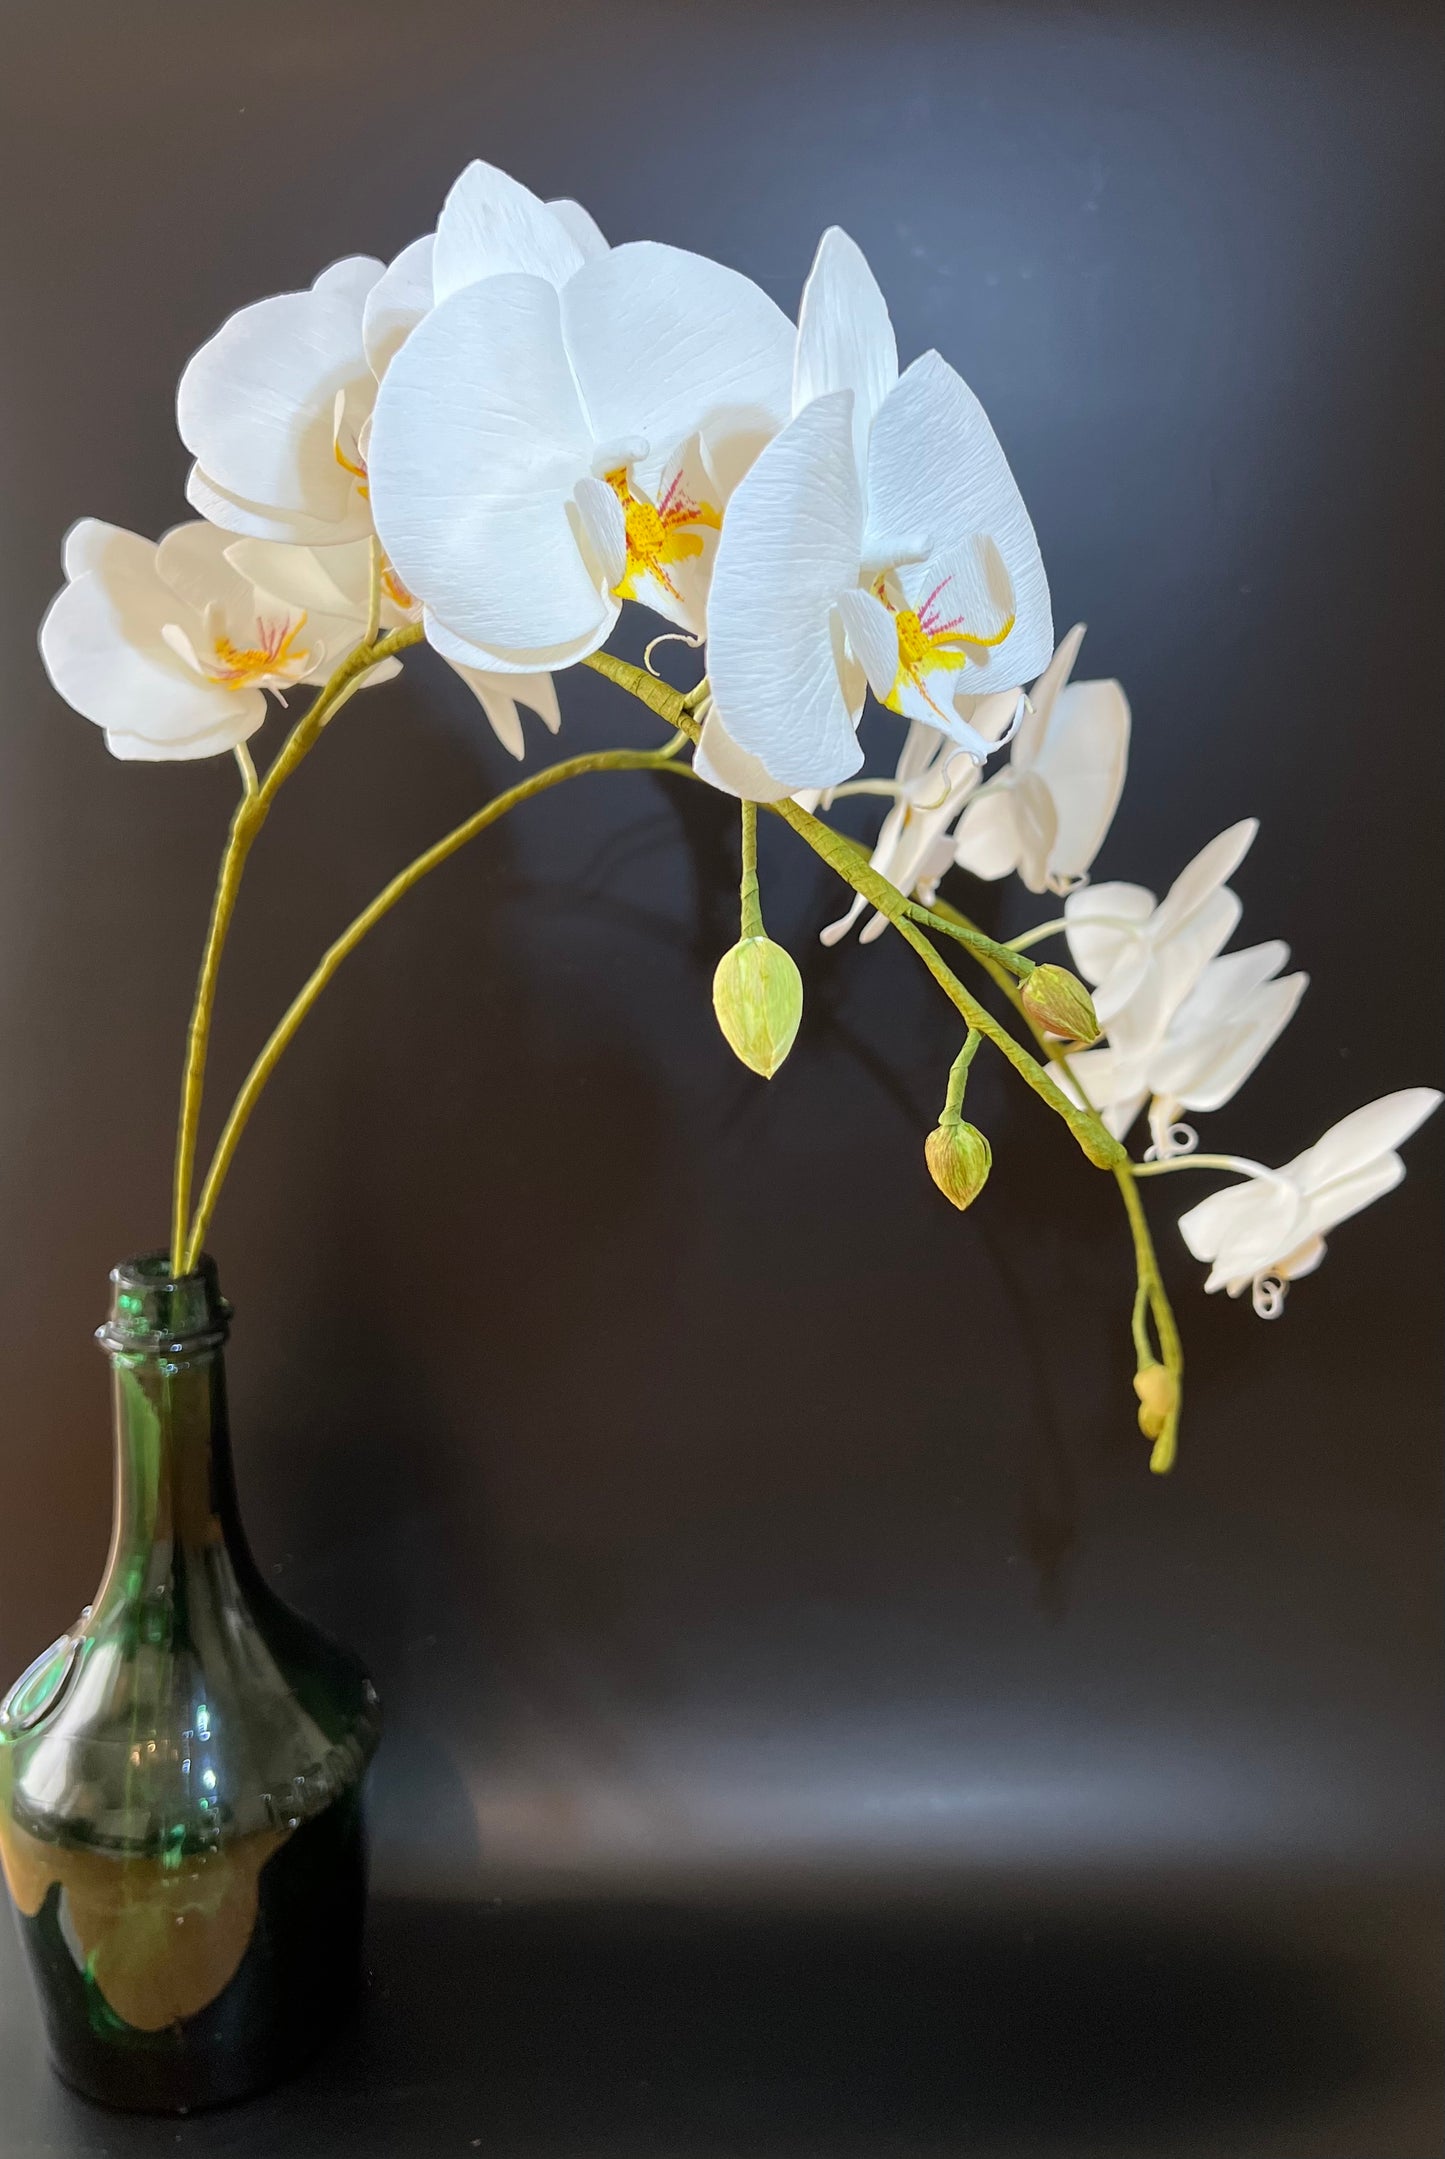 Large Phalaenopsis Orchids